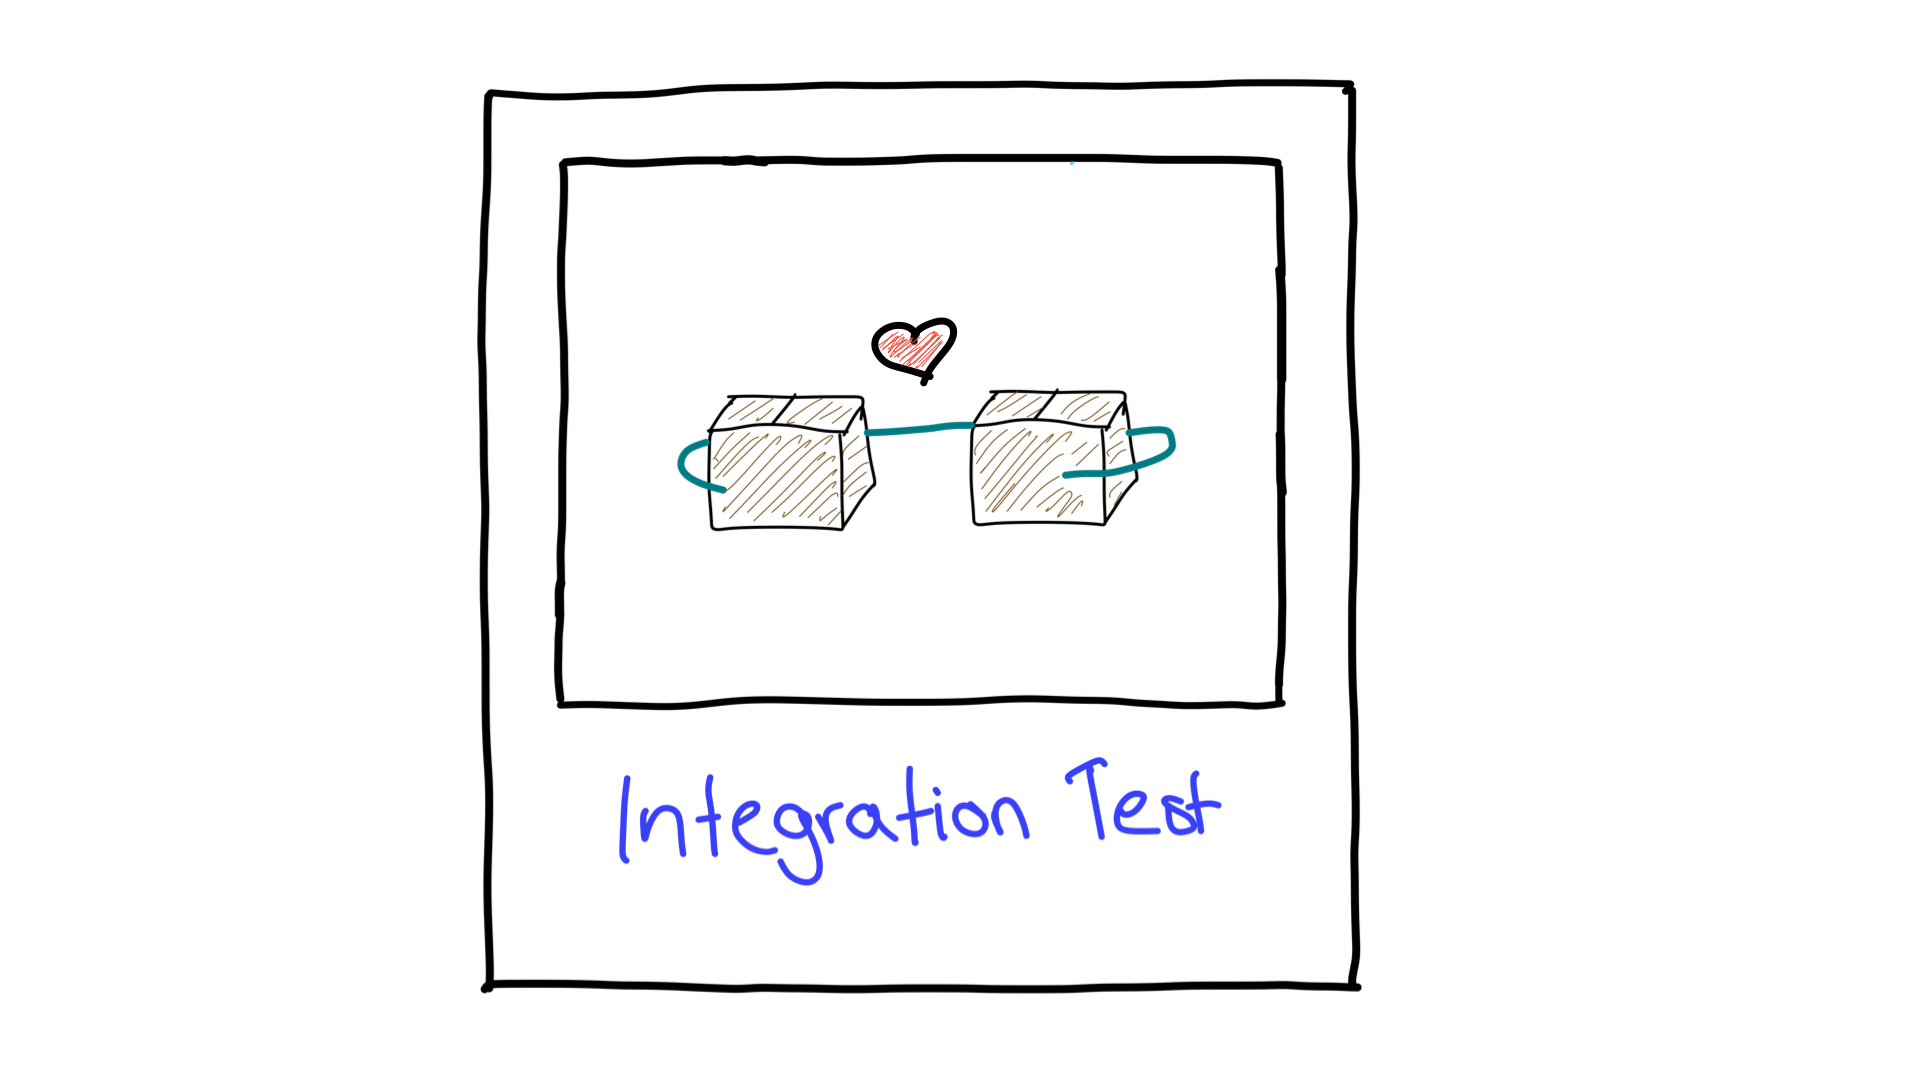 Representación simplificada de las pruebas de integración que muestra cómo dos unidades trabajan juntas.